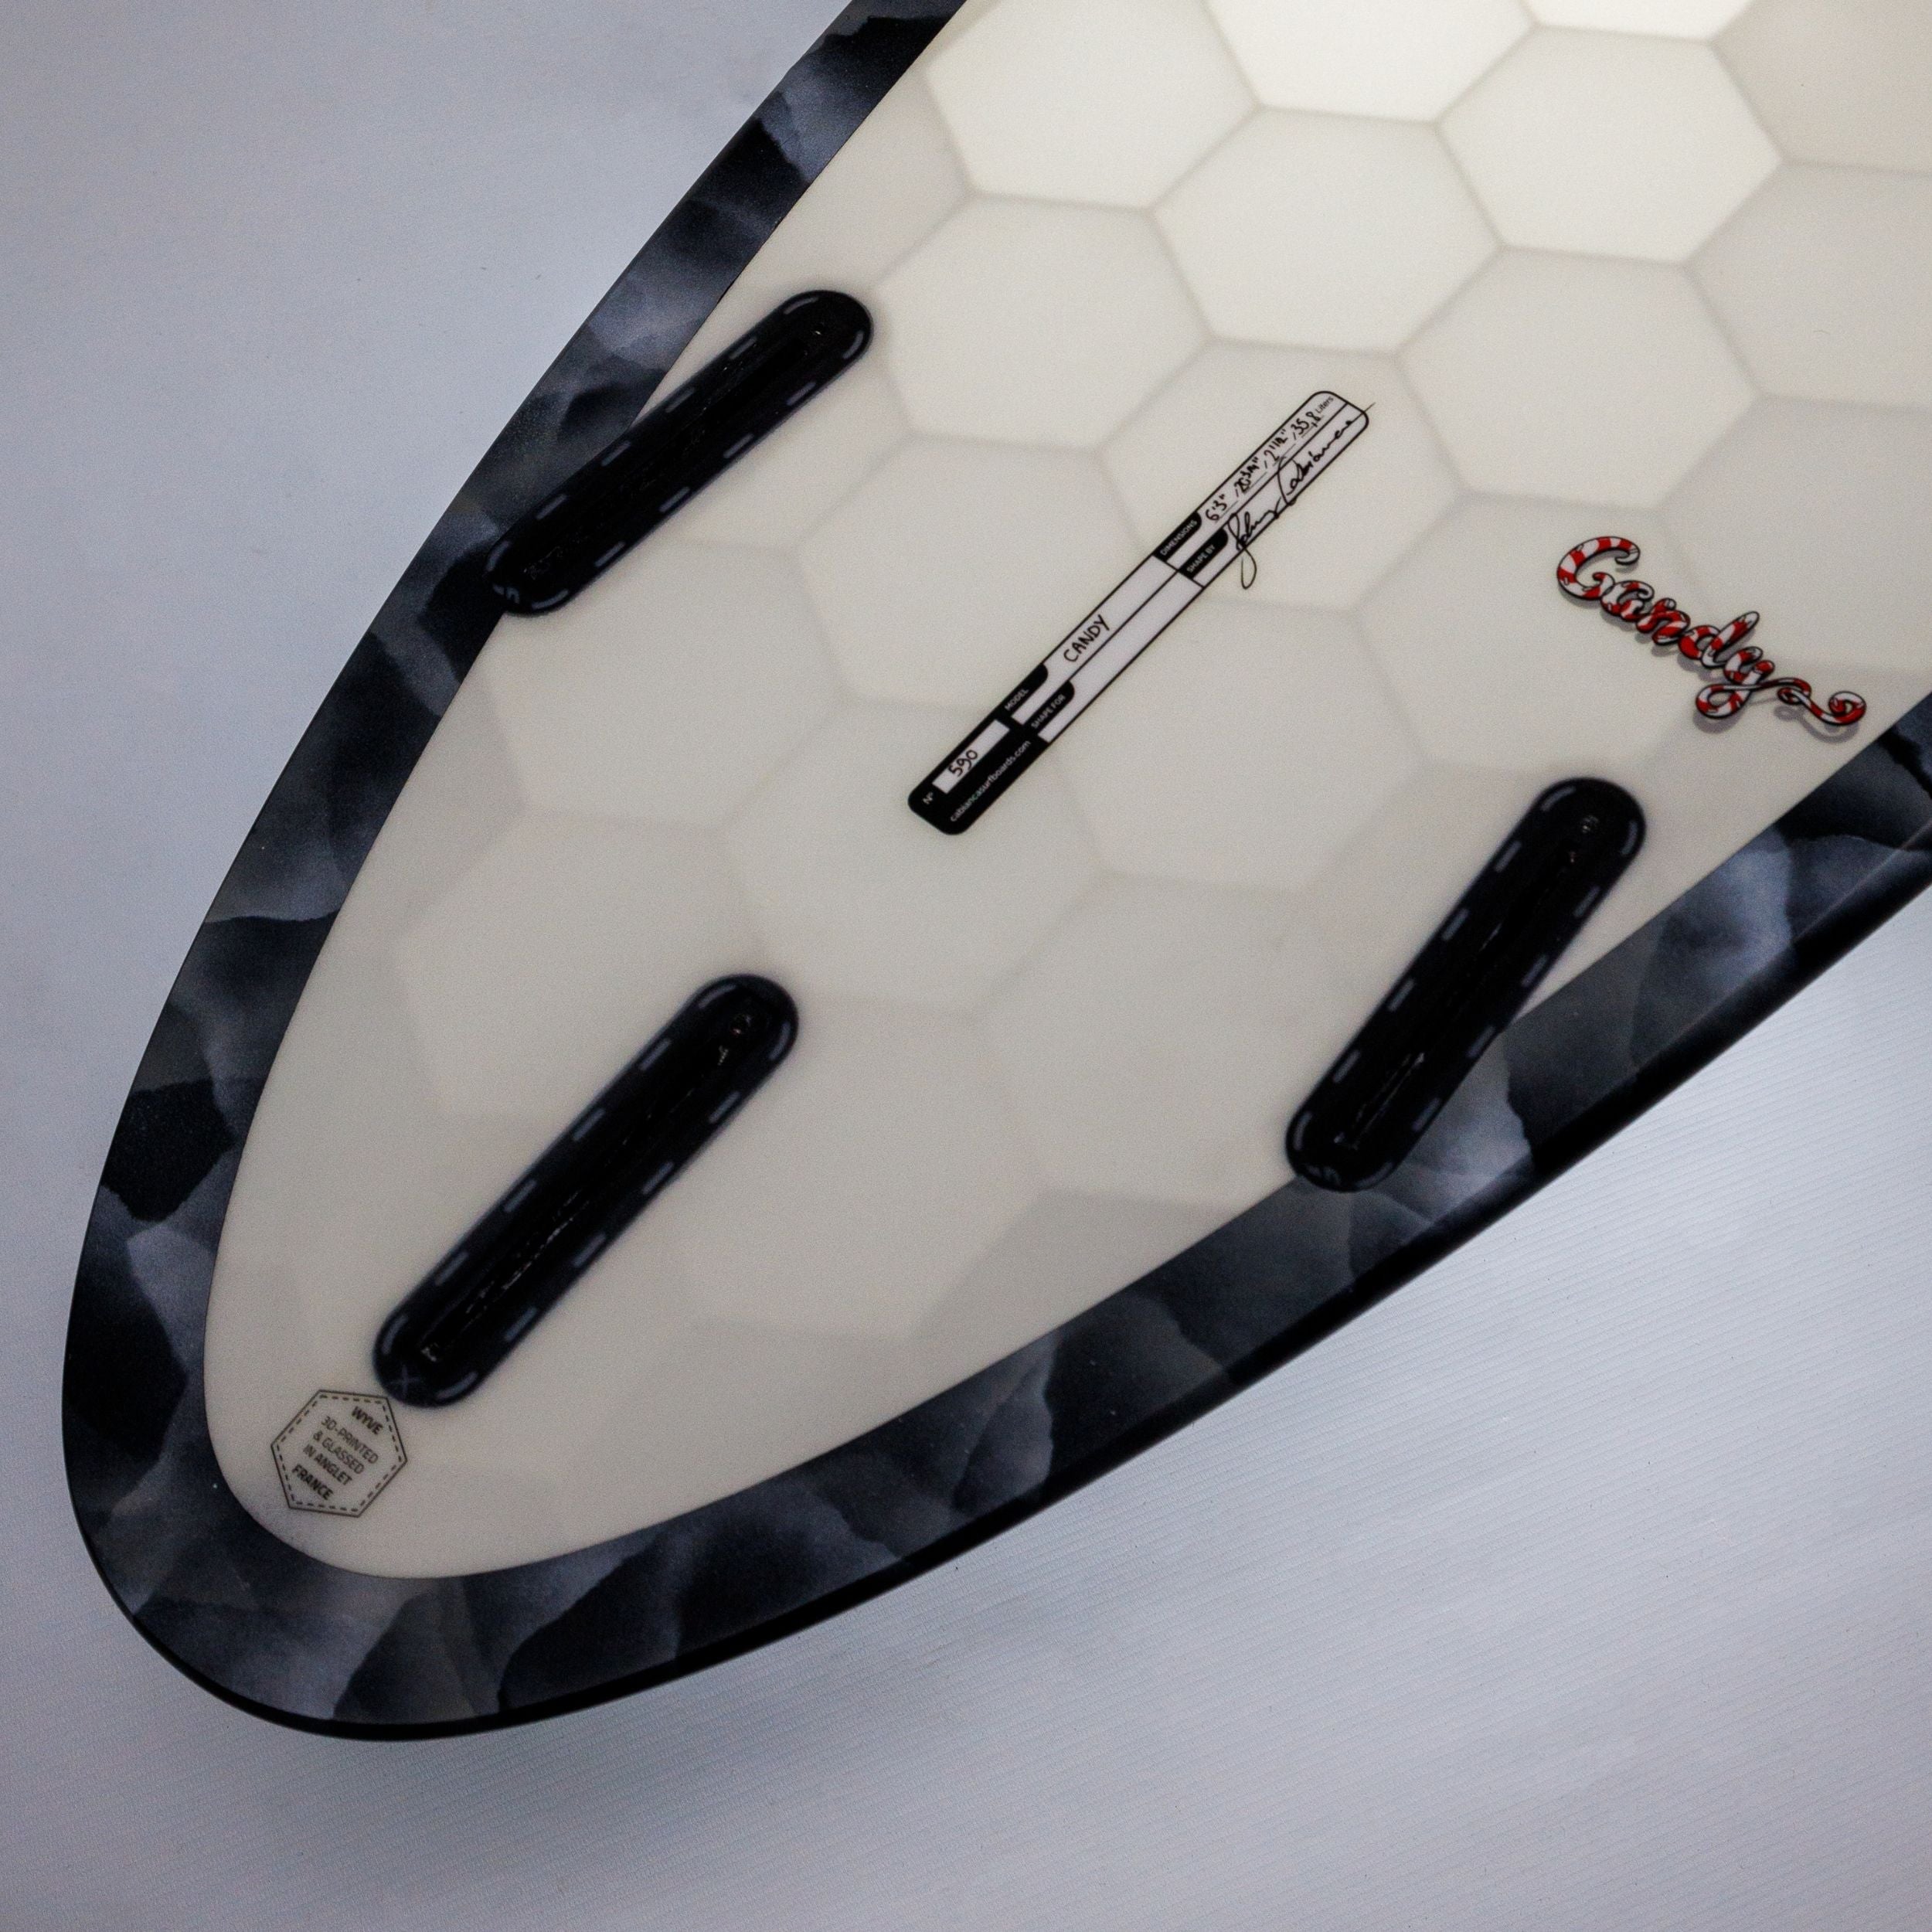 Tail d'une Planche de surf Wyve made in France et construite avec un nouyeau imprimé en 3D